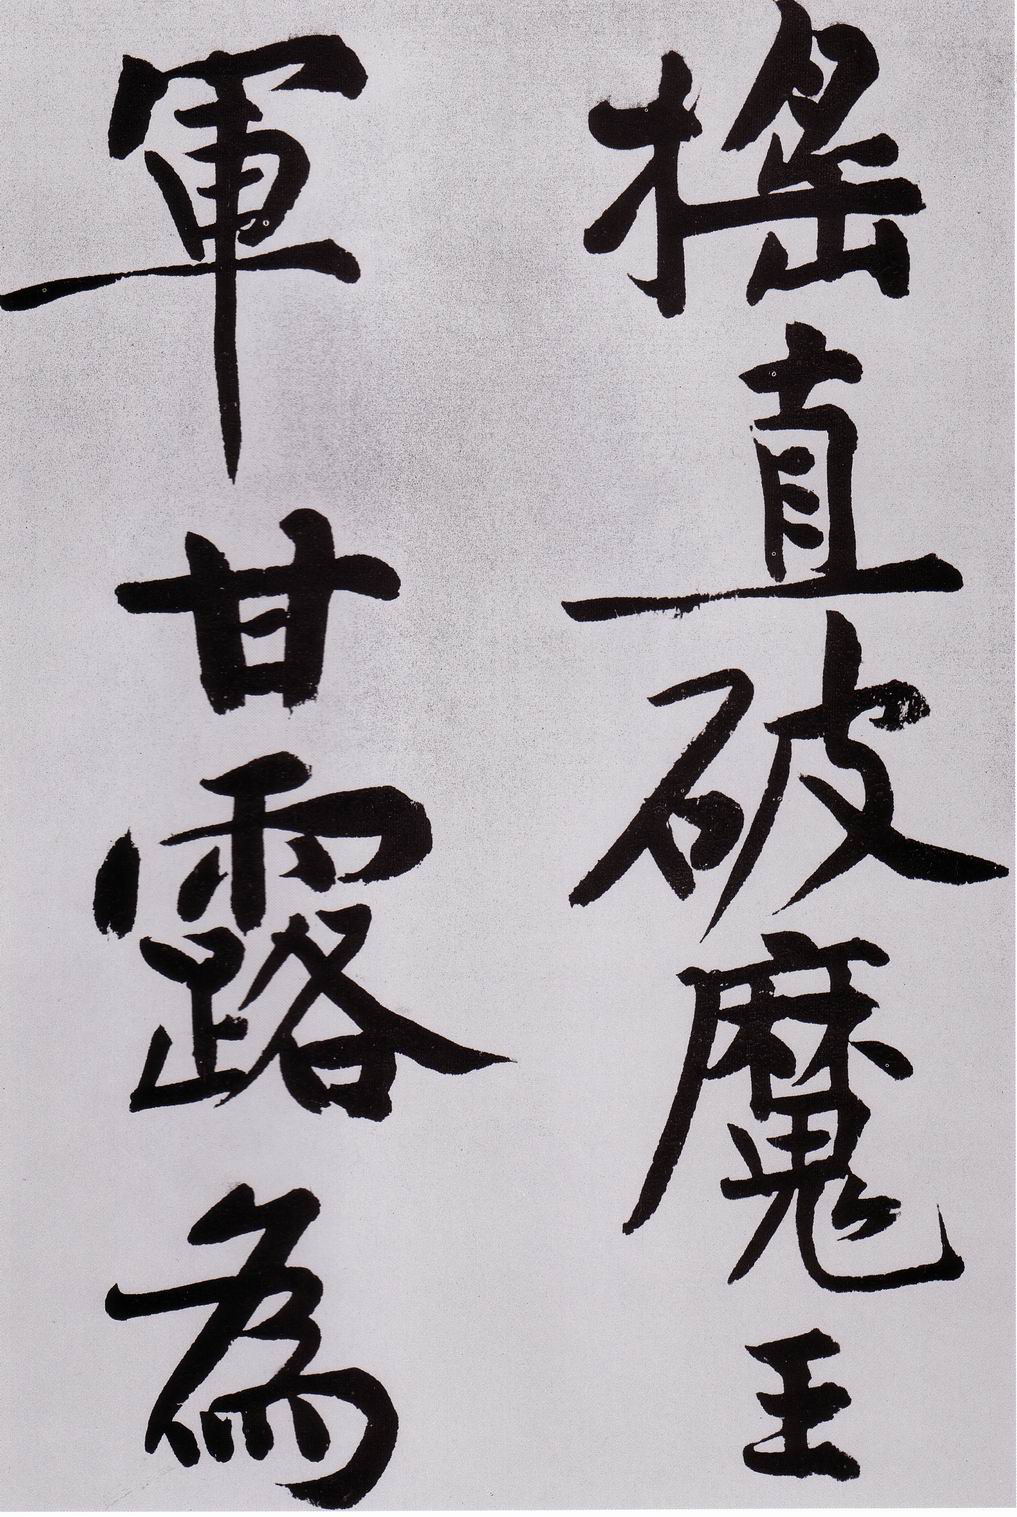 黄庭坚《发愿文卷》-台北故宫博物院藏(图4)